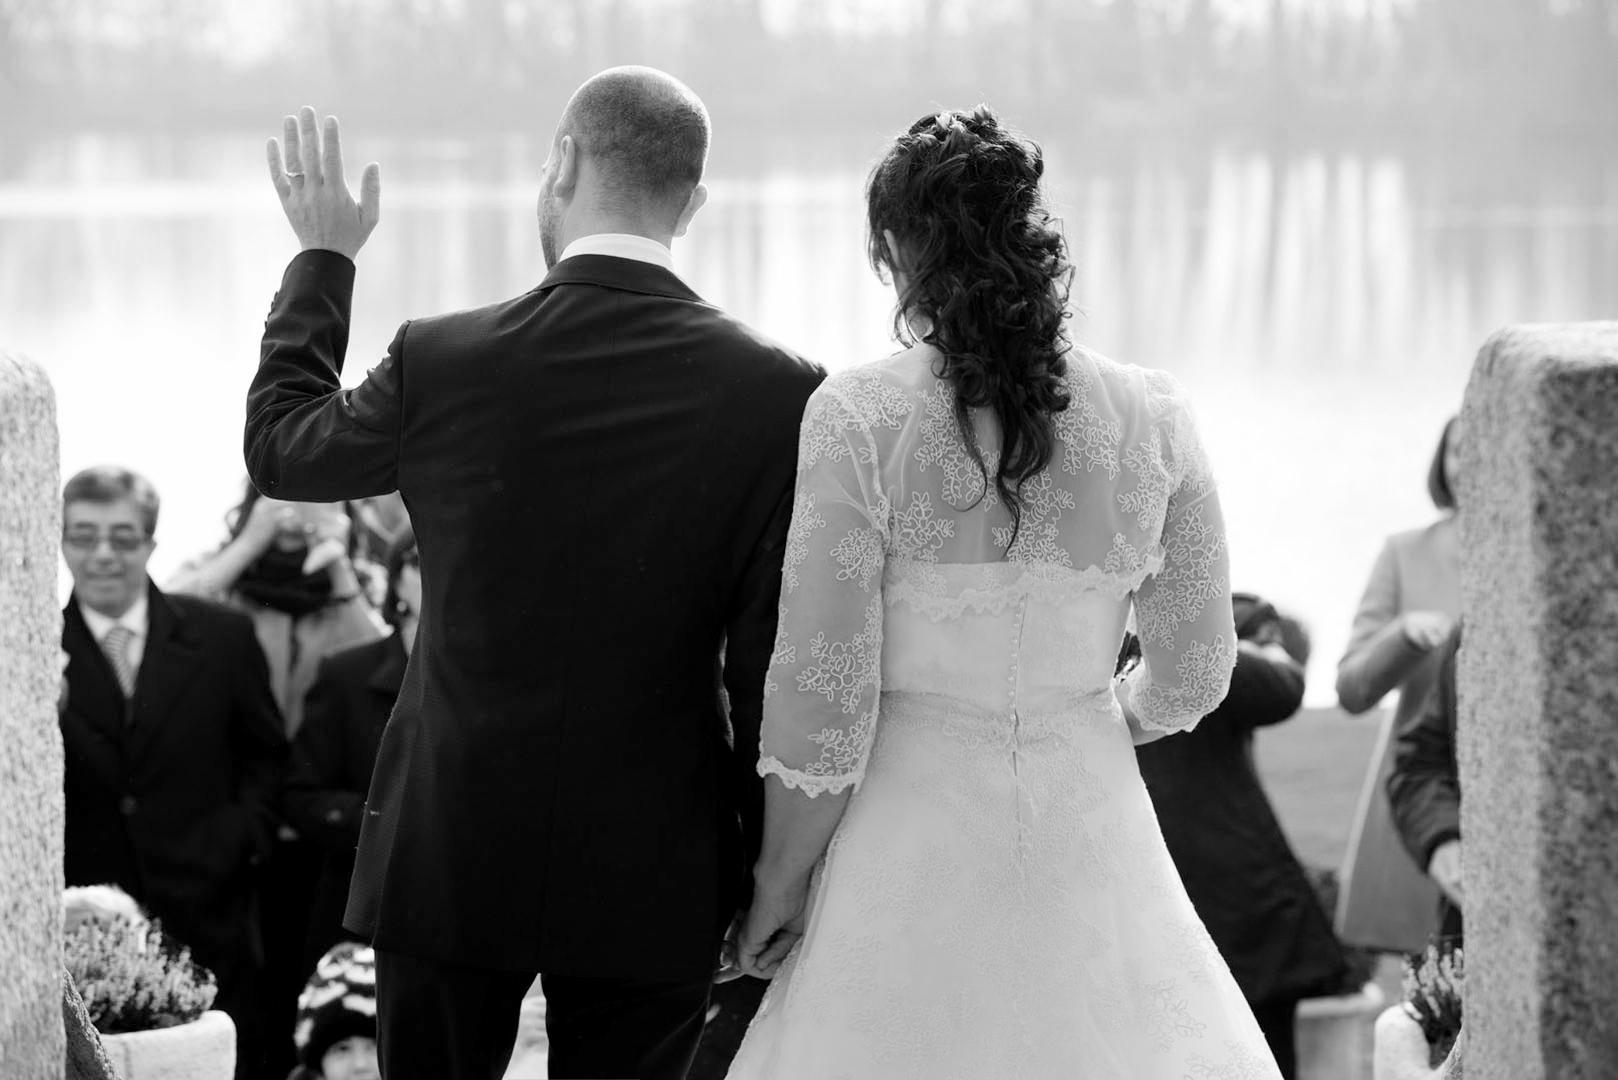 Costo fotografo Matrimonio Pavia | I matrimoni di piccoli ricordi photography milano